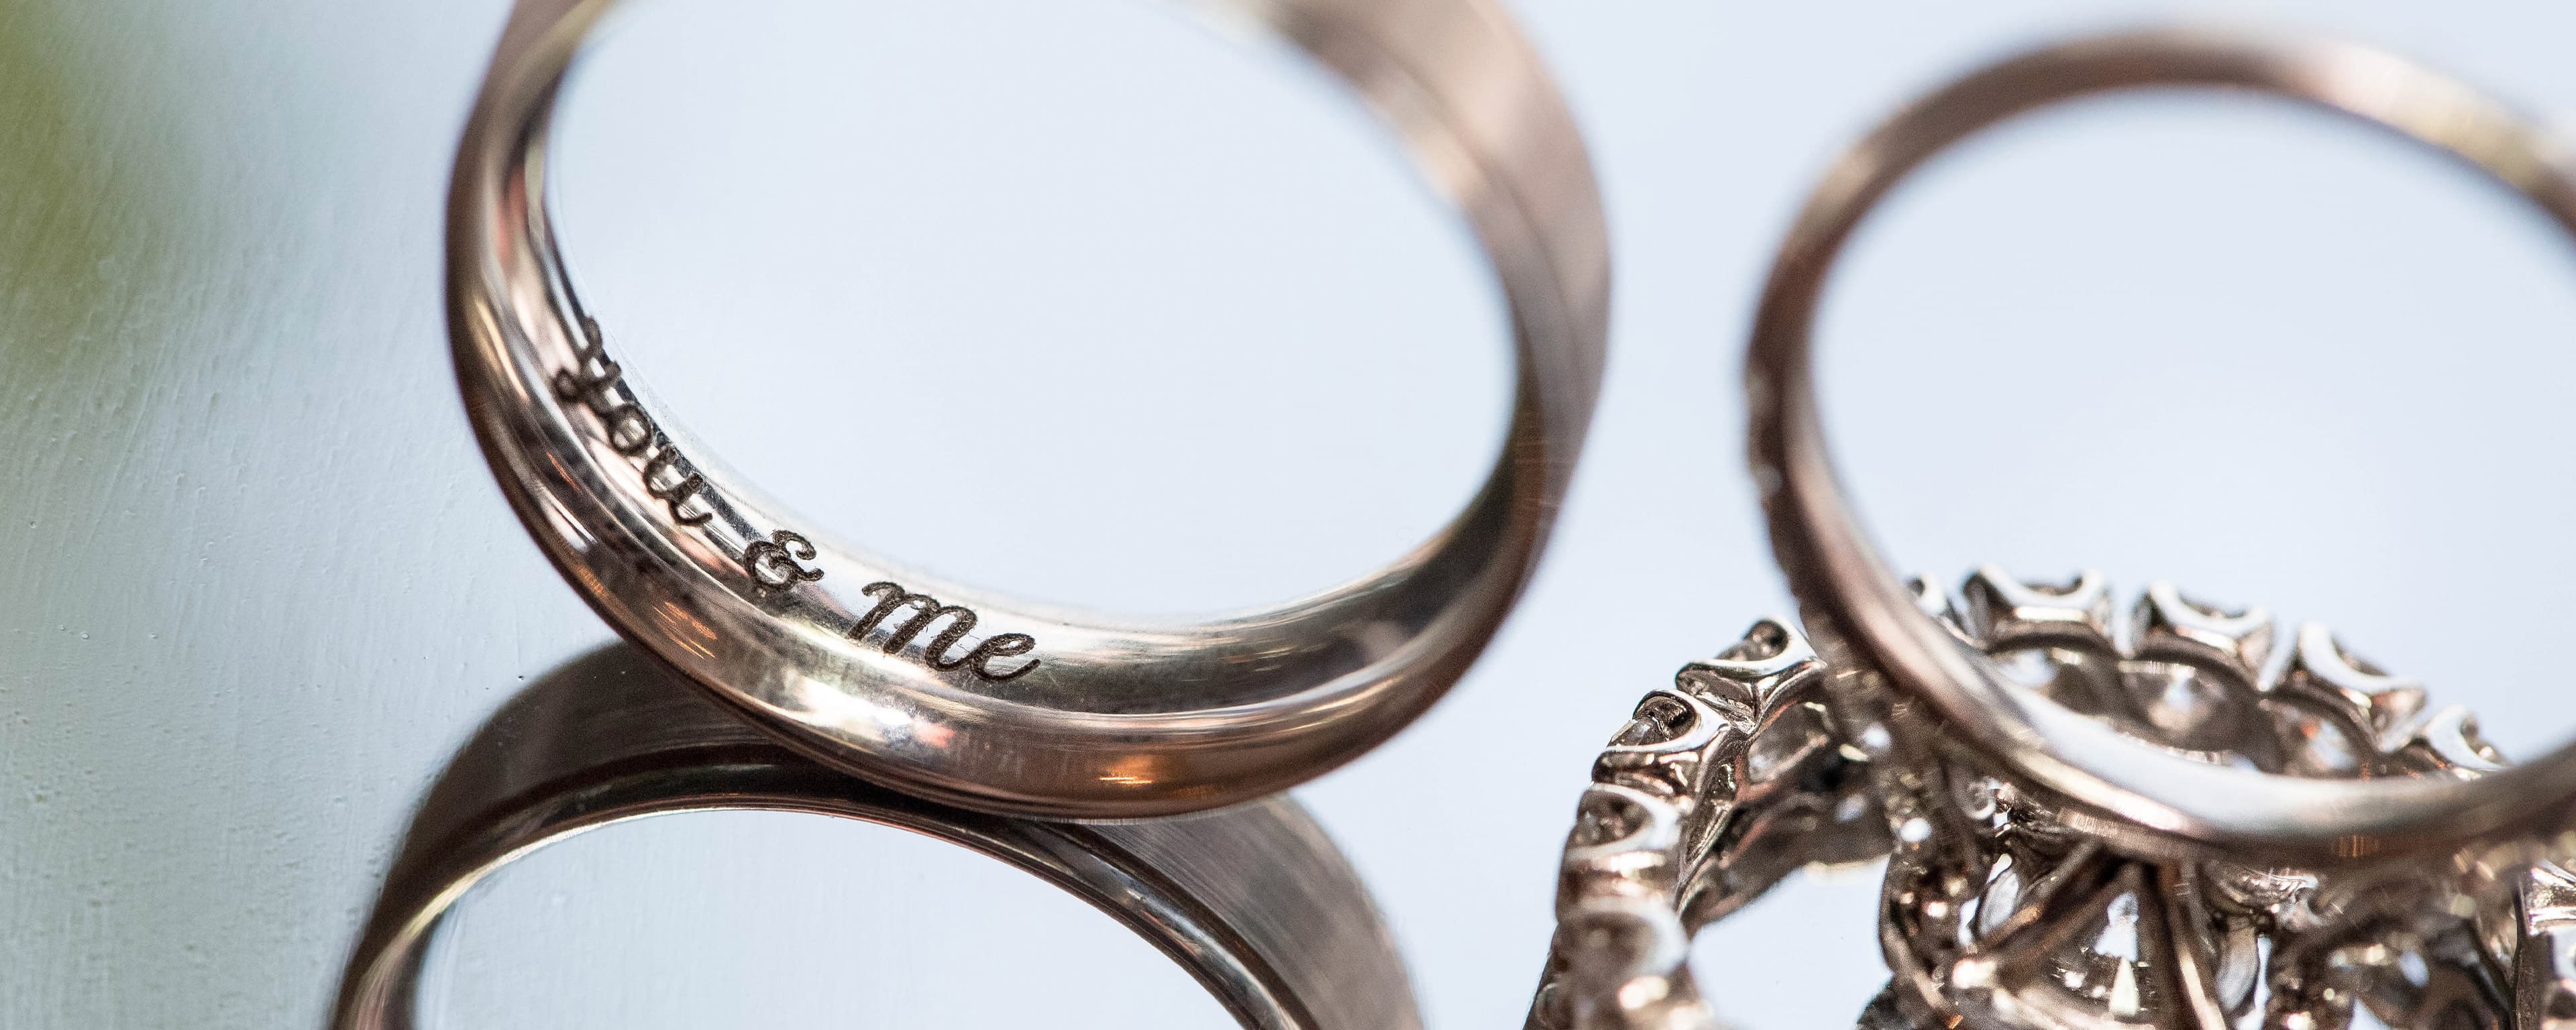 Leaf Wedding Ring Bands, Gold, handmade, engraved | Bowman Originals,  Sarasota, 941-302-9594.